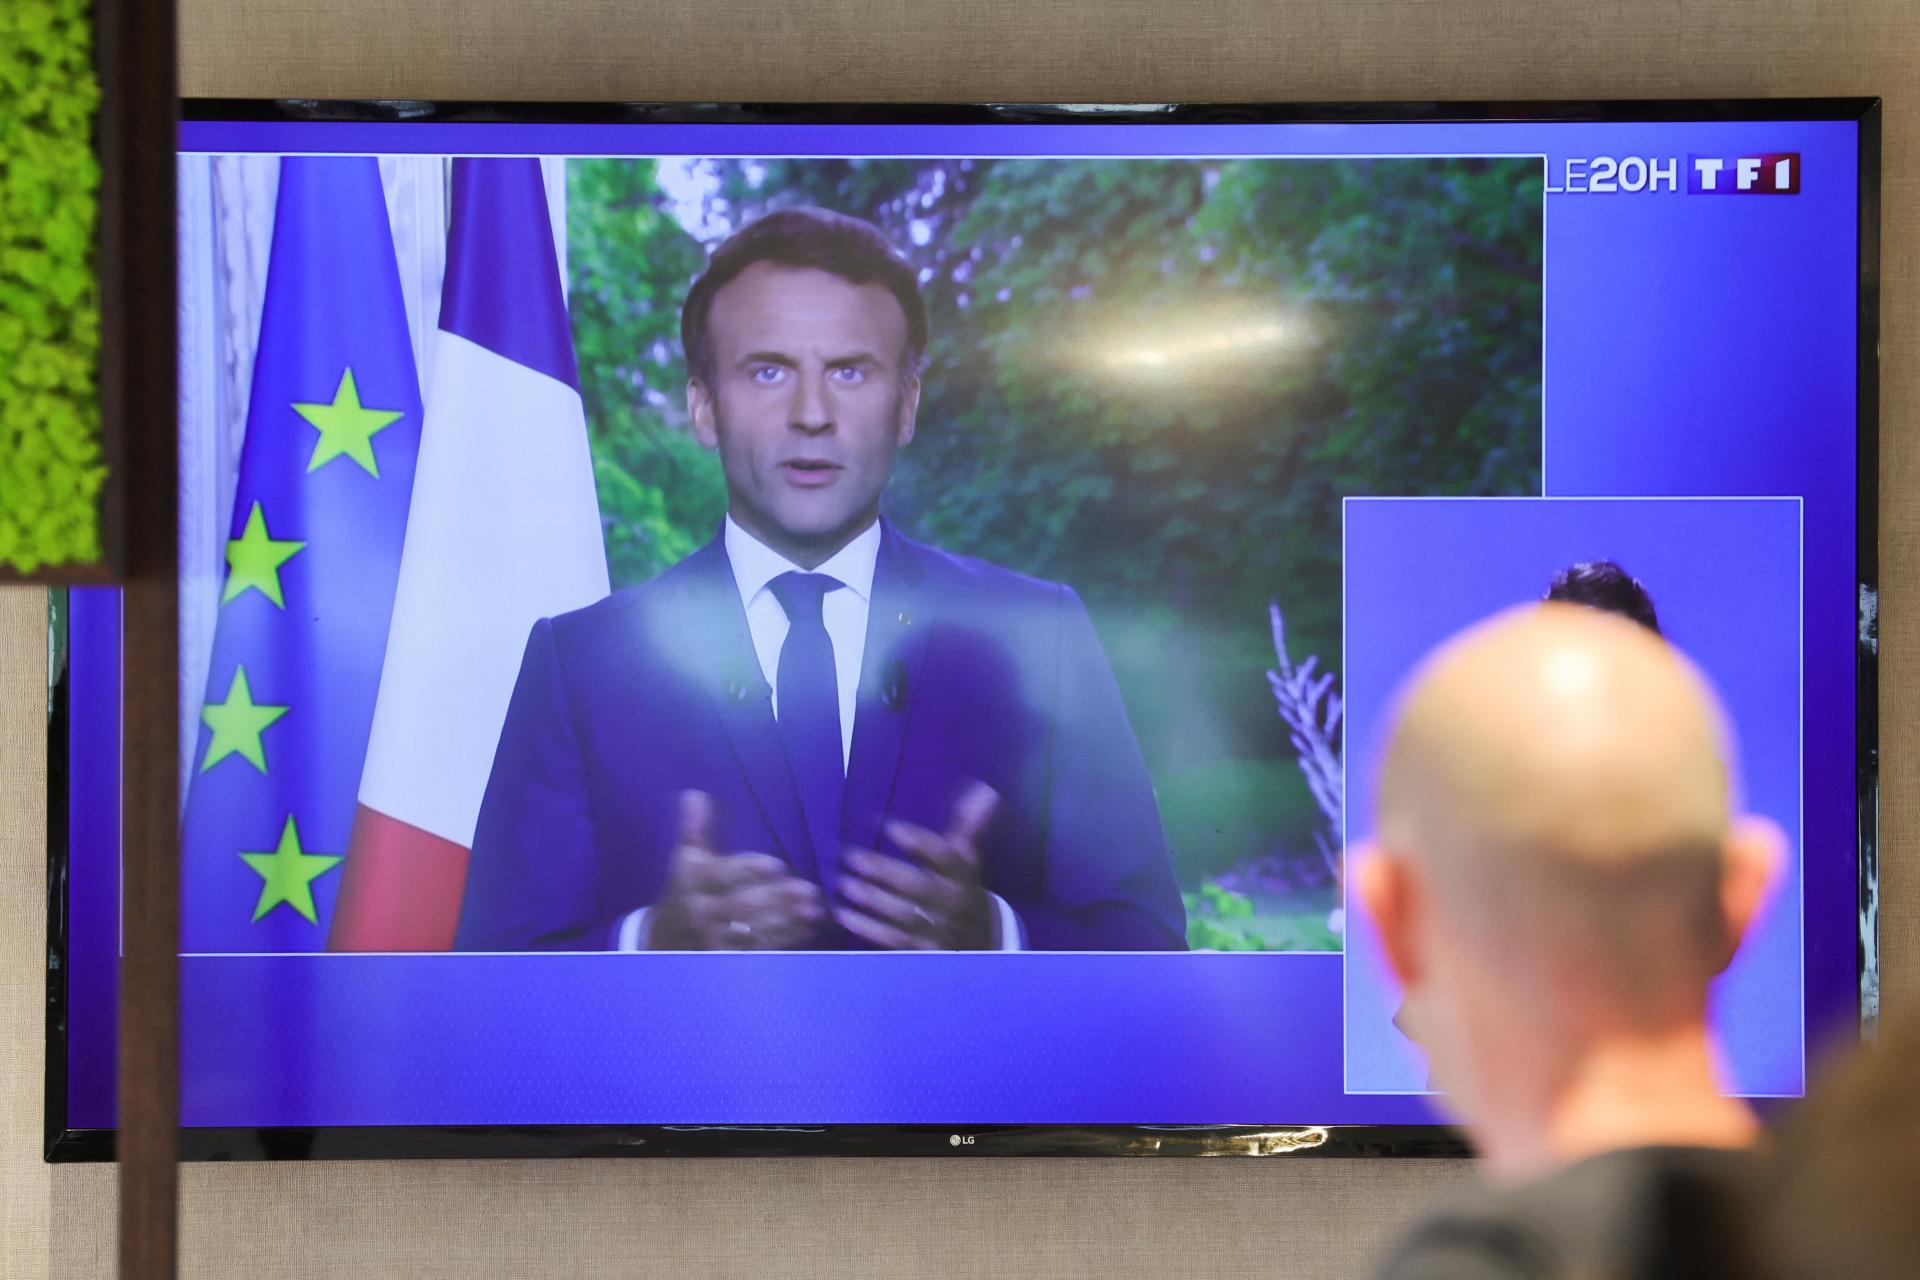 L’opposition est prête à coopérer sur les grands dossiers, a déclaré Macron